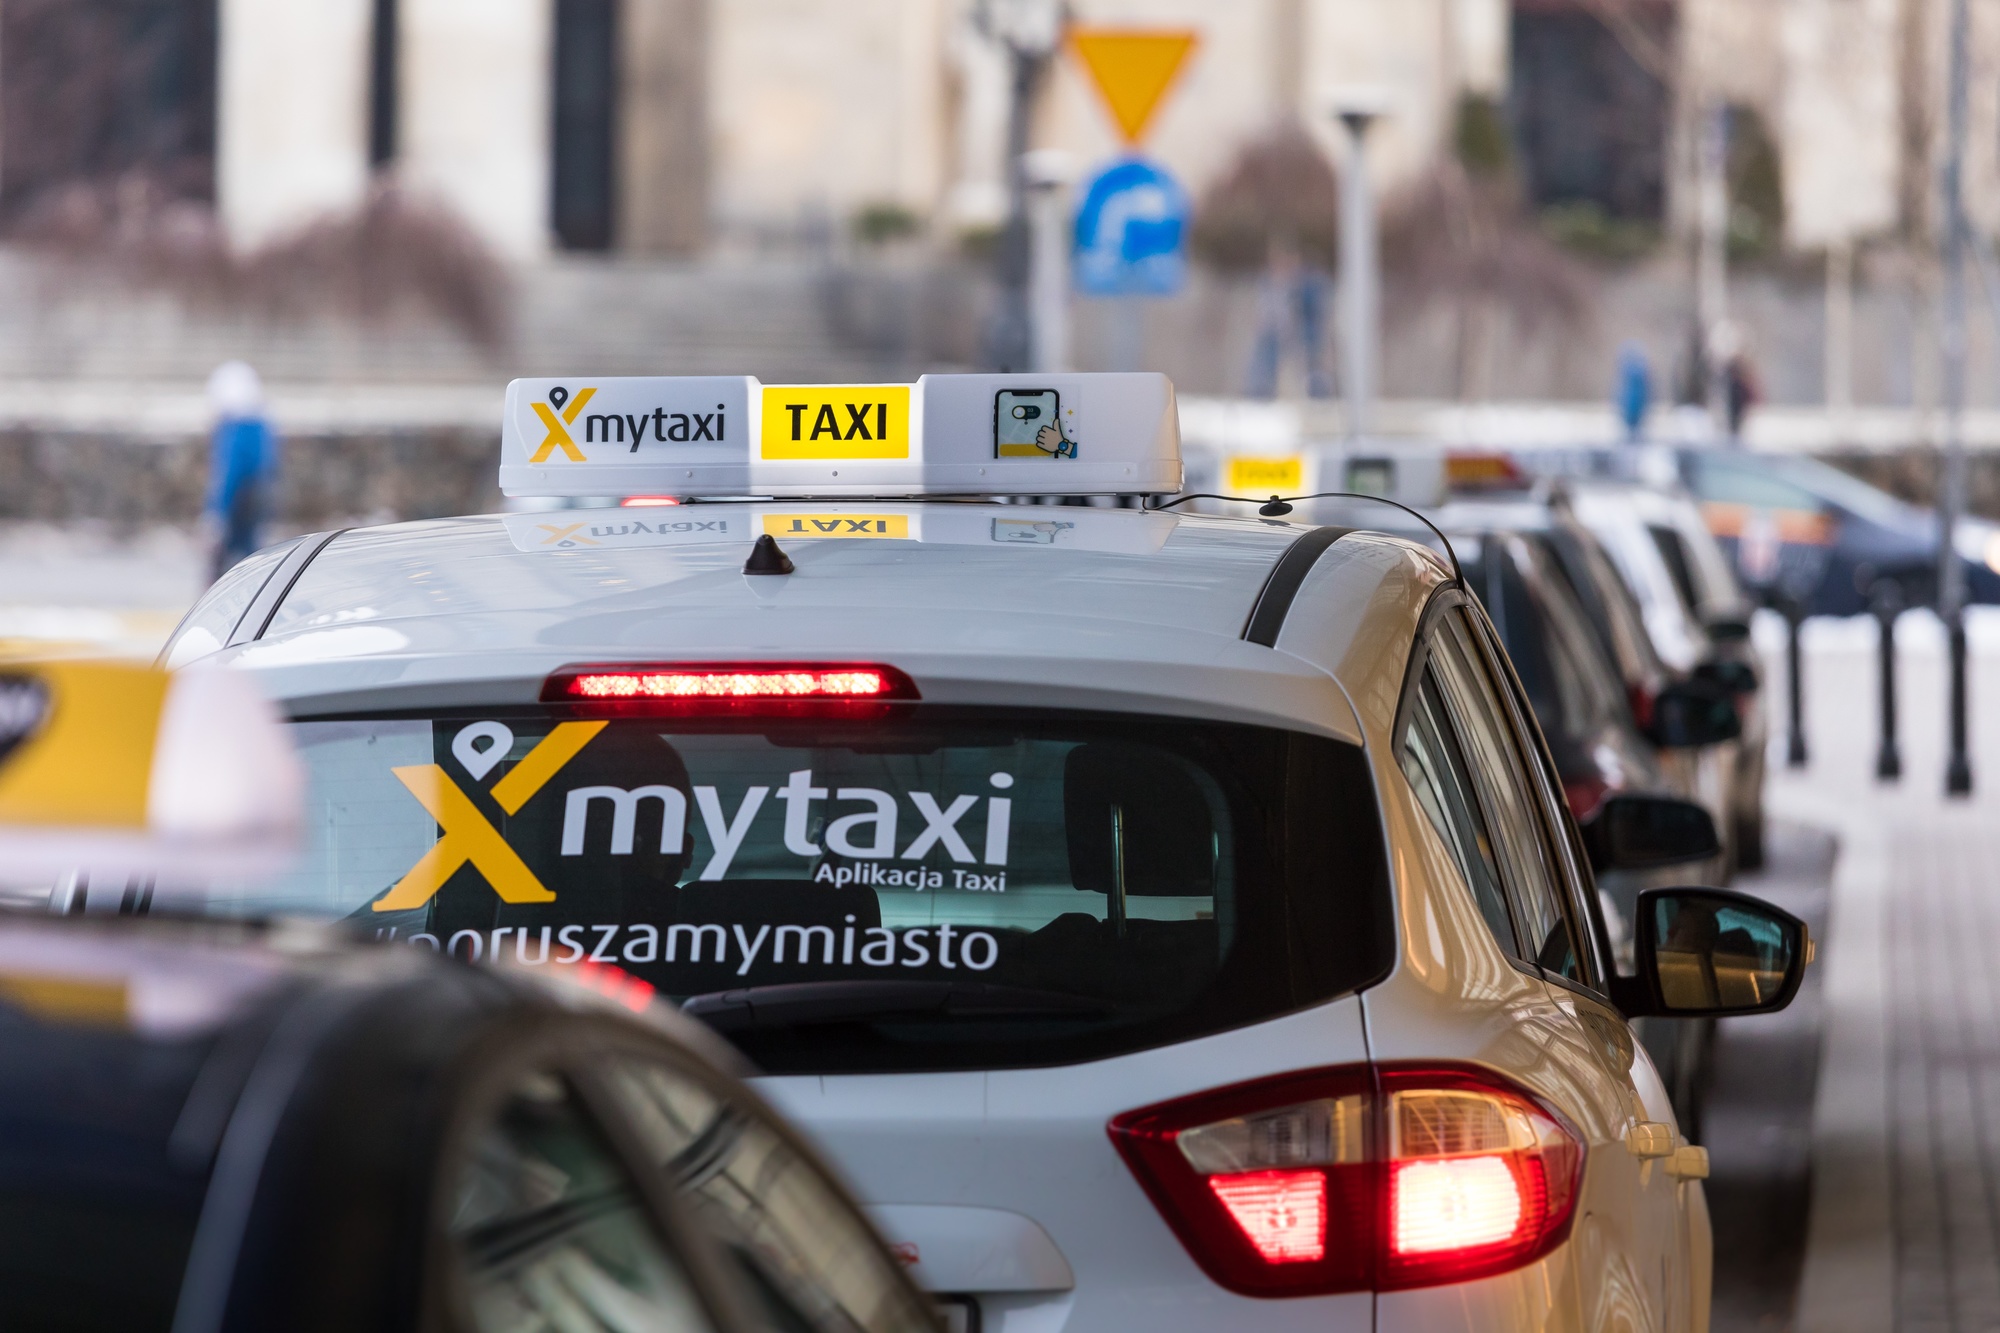 Ile kosztuje taksówka? Cena zagwarantowana za przejazd mytaxi